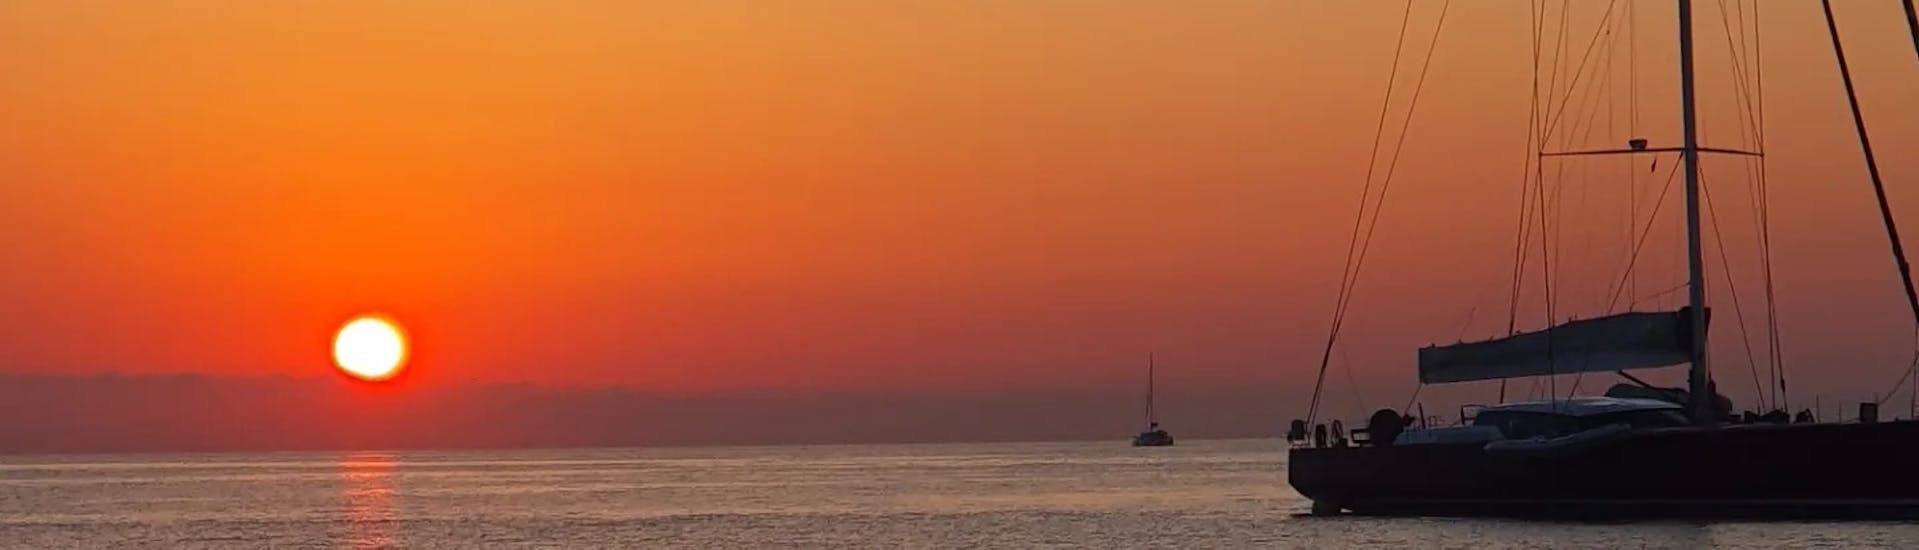 Gita in barca privata al tramonto da Palermo a Mondello con skipper.